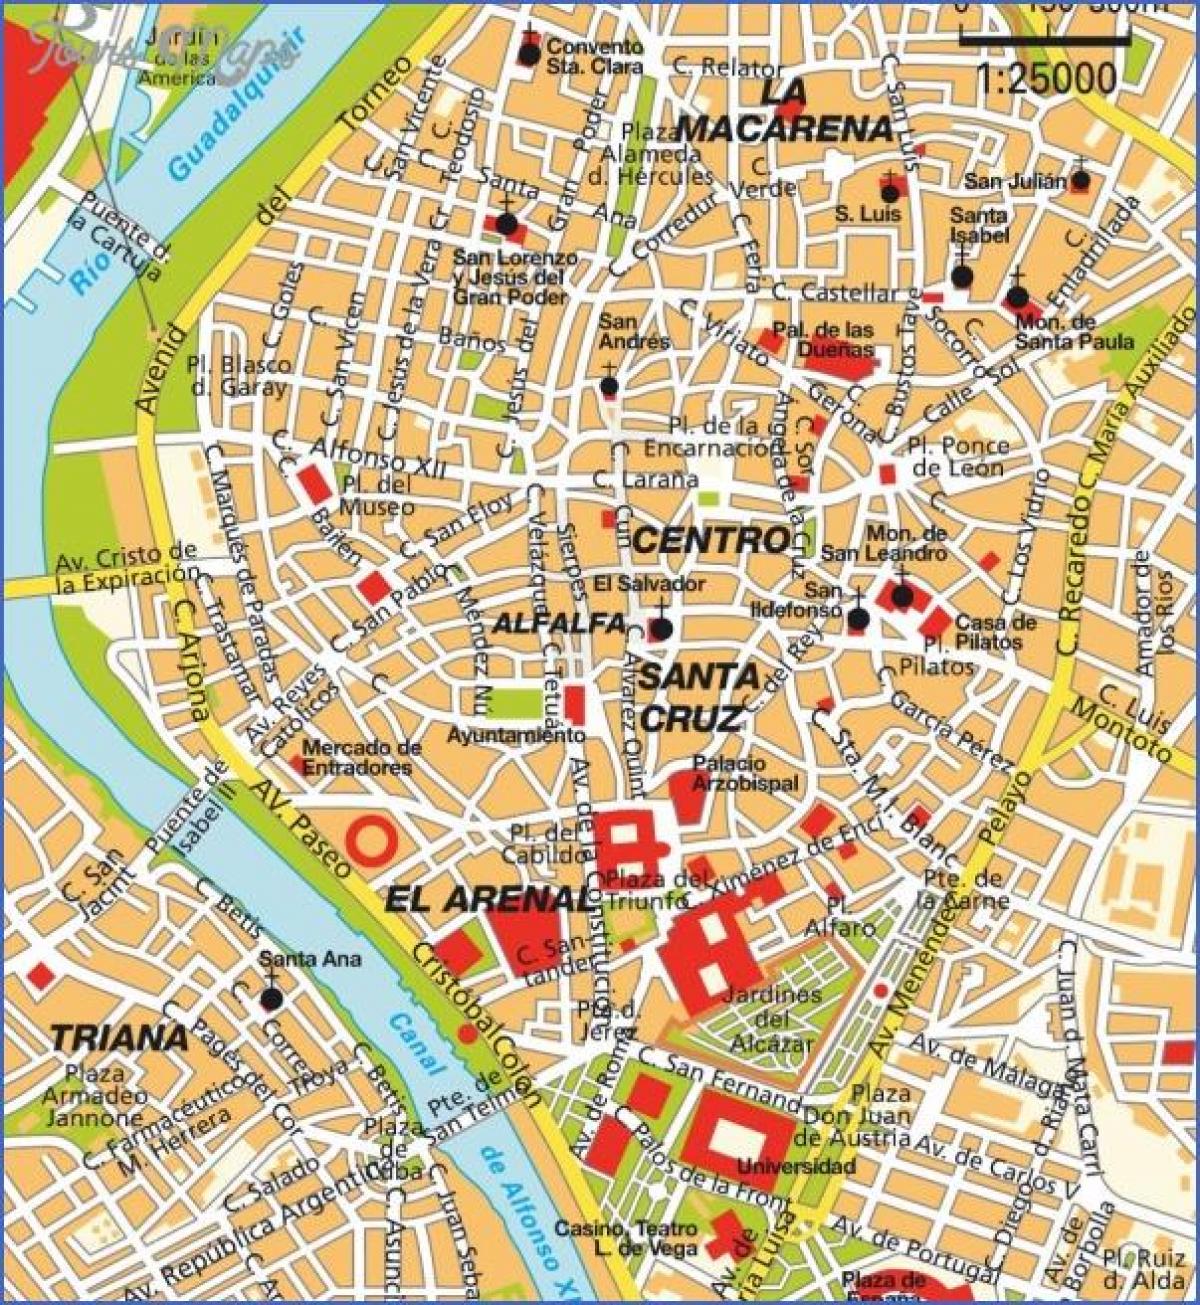 Razgled Seville na karti